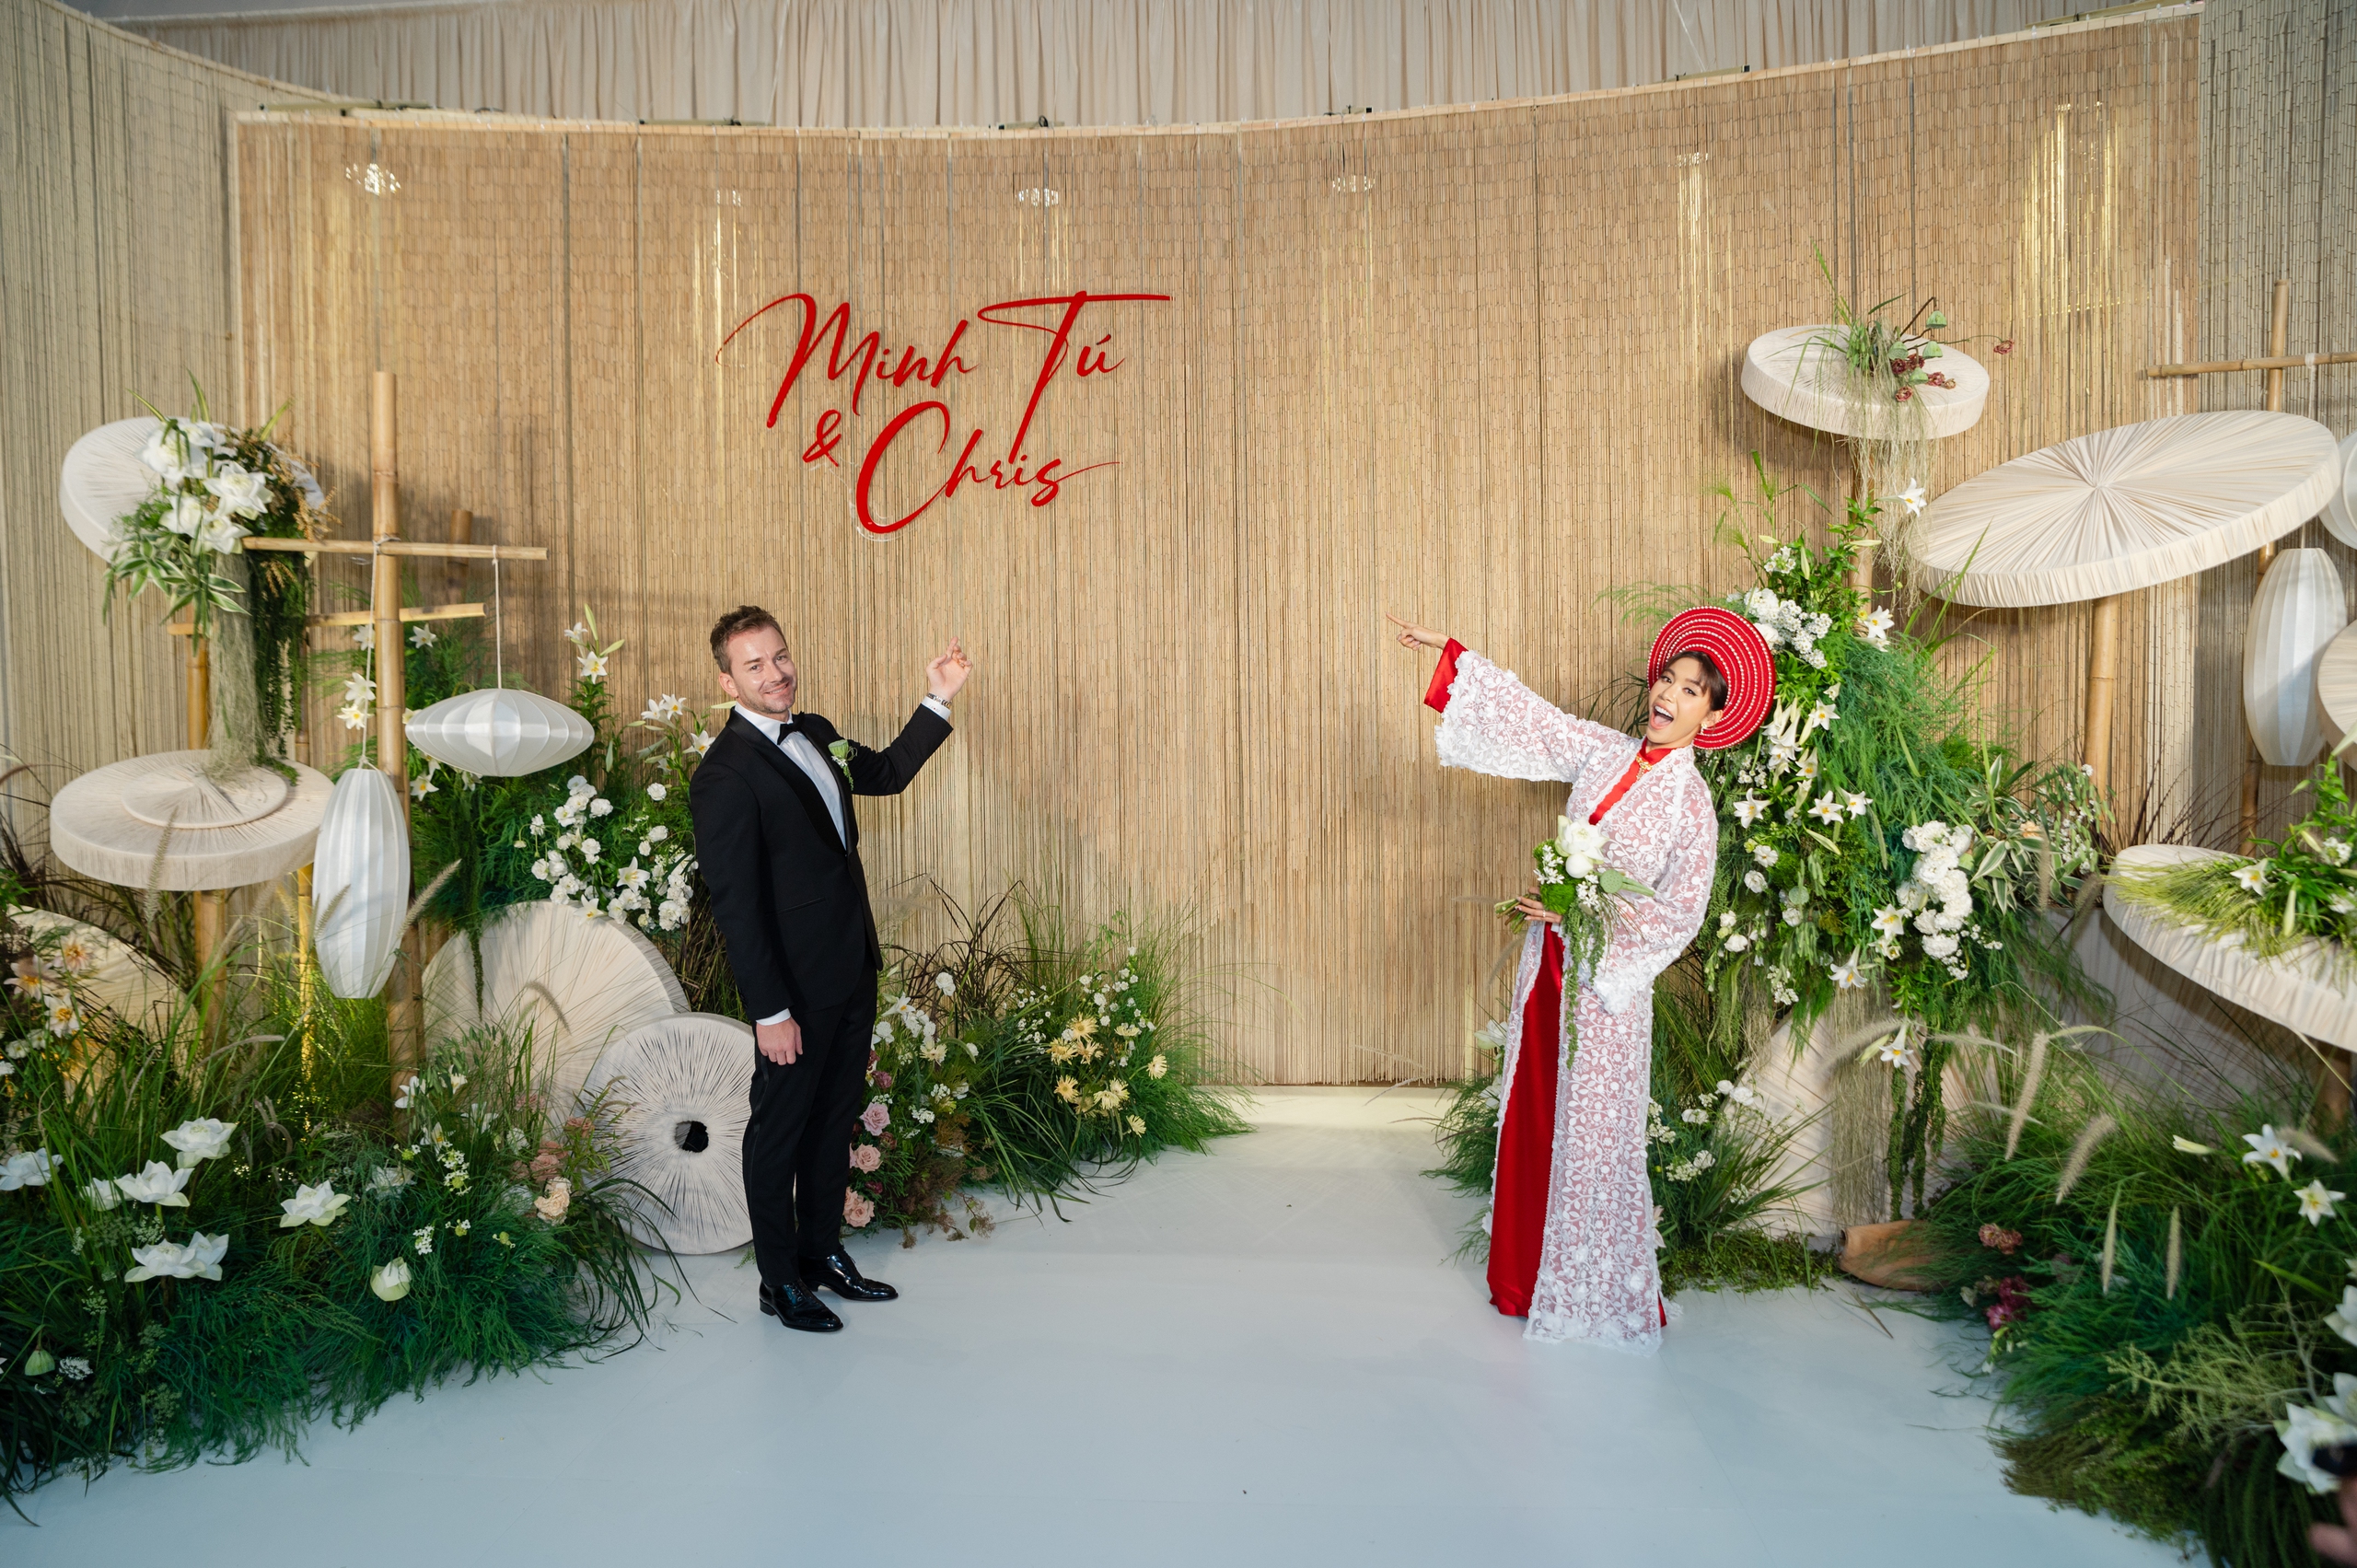 Đám cưới Minh Tú và chồng Tây gây "choáng" với không gian phủ đầy hoa trắng, đậm chất làng quê Việt- Ảnh 2.